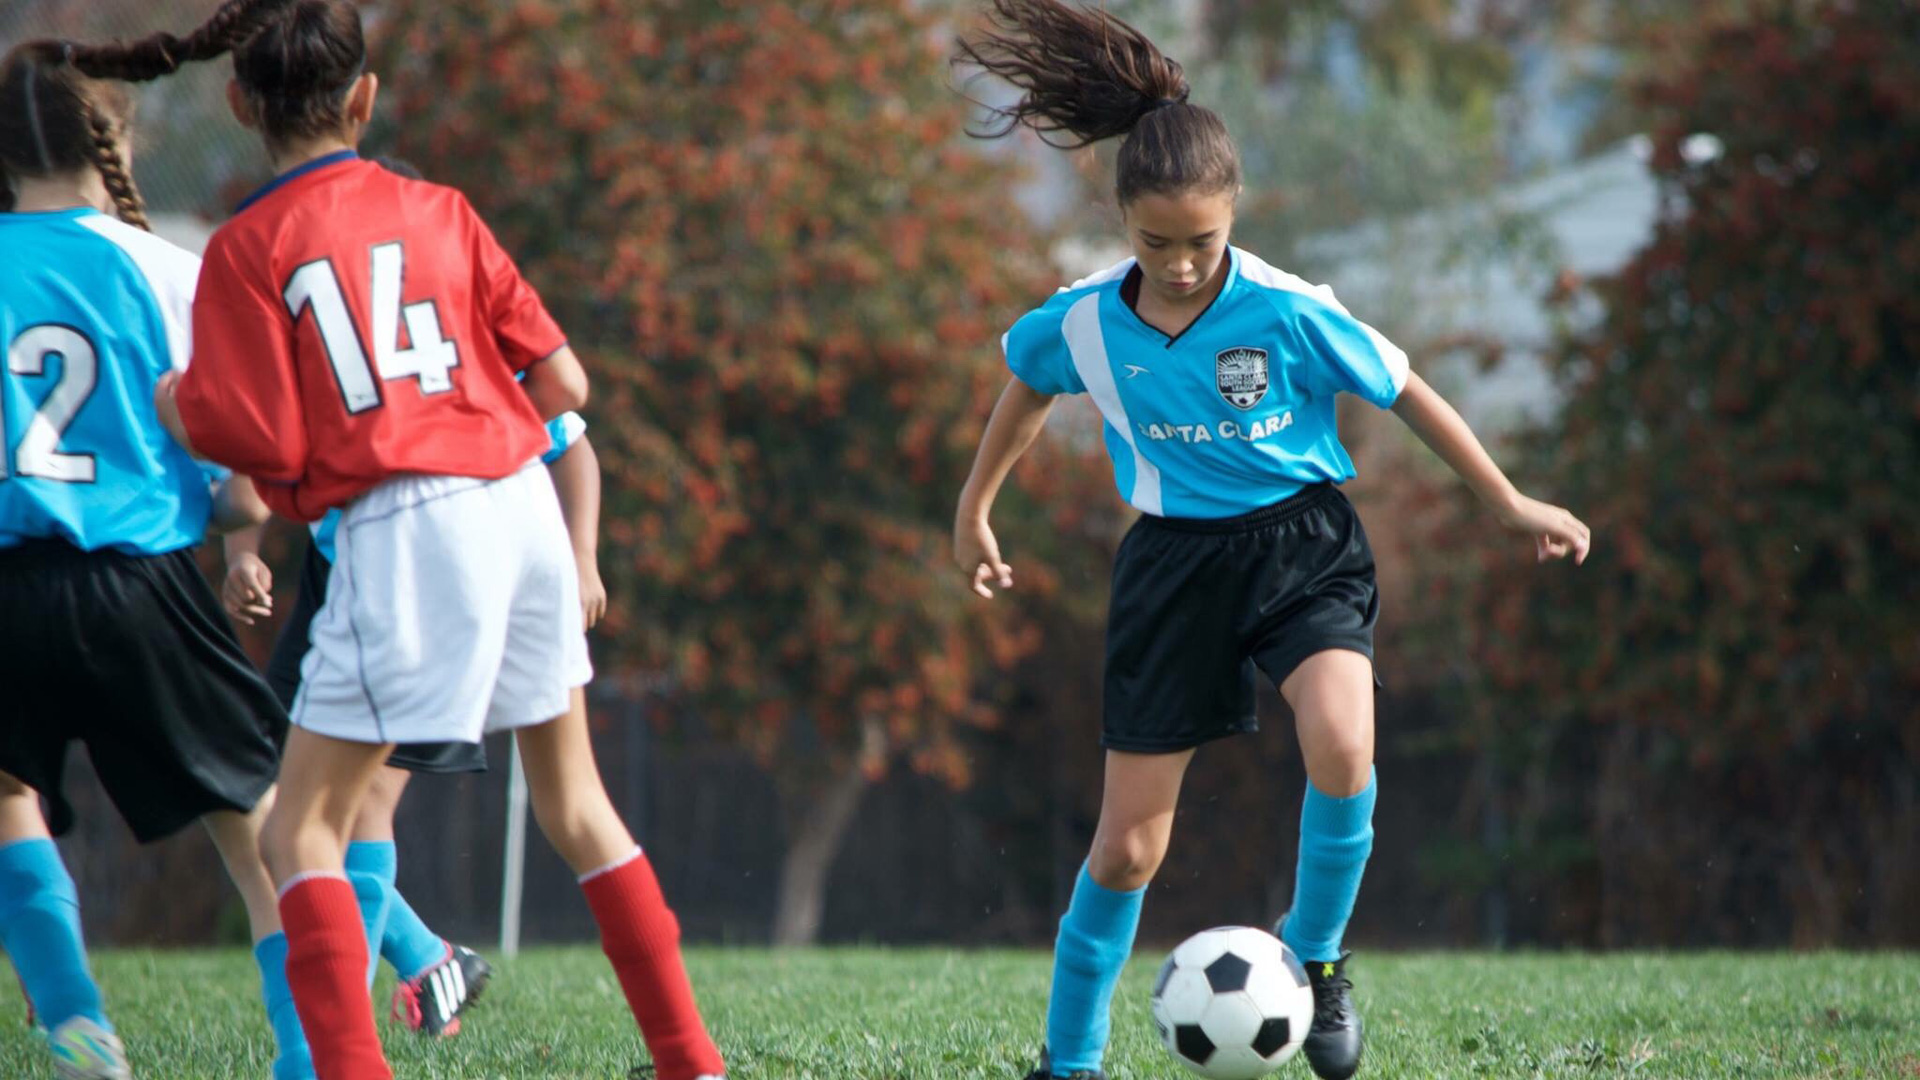 El fútbol es cada vez más popular entre las niñas | Un Nuevo Día | Telemundo